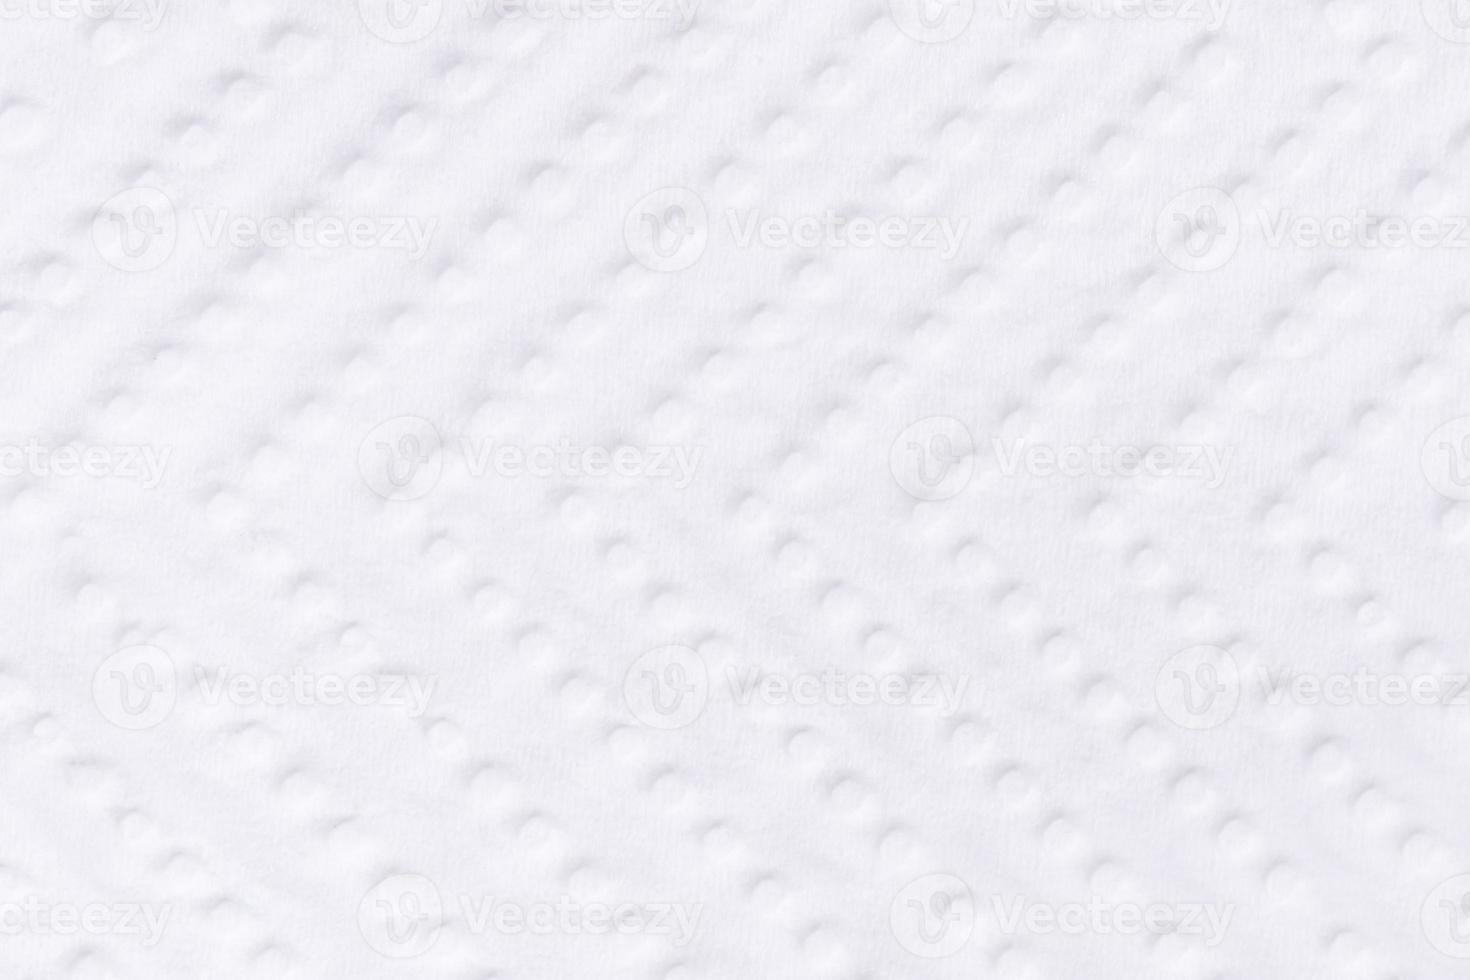 texture de fond de serviette en papier avec des cercles et des lignes se bouchent. photo